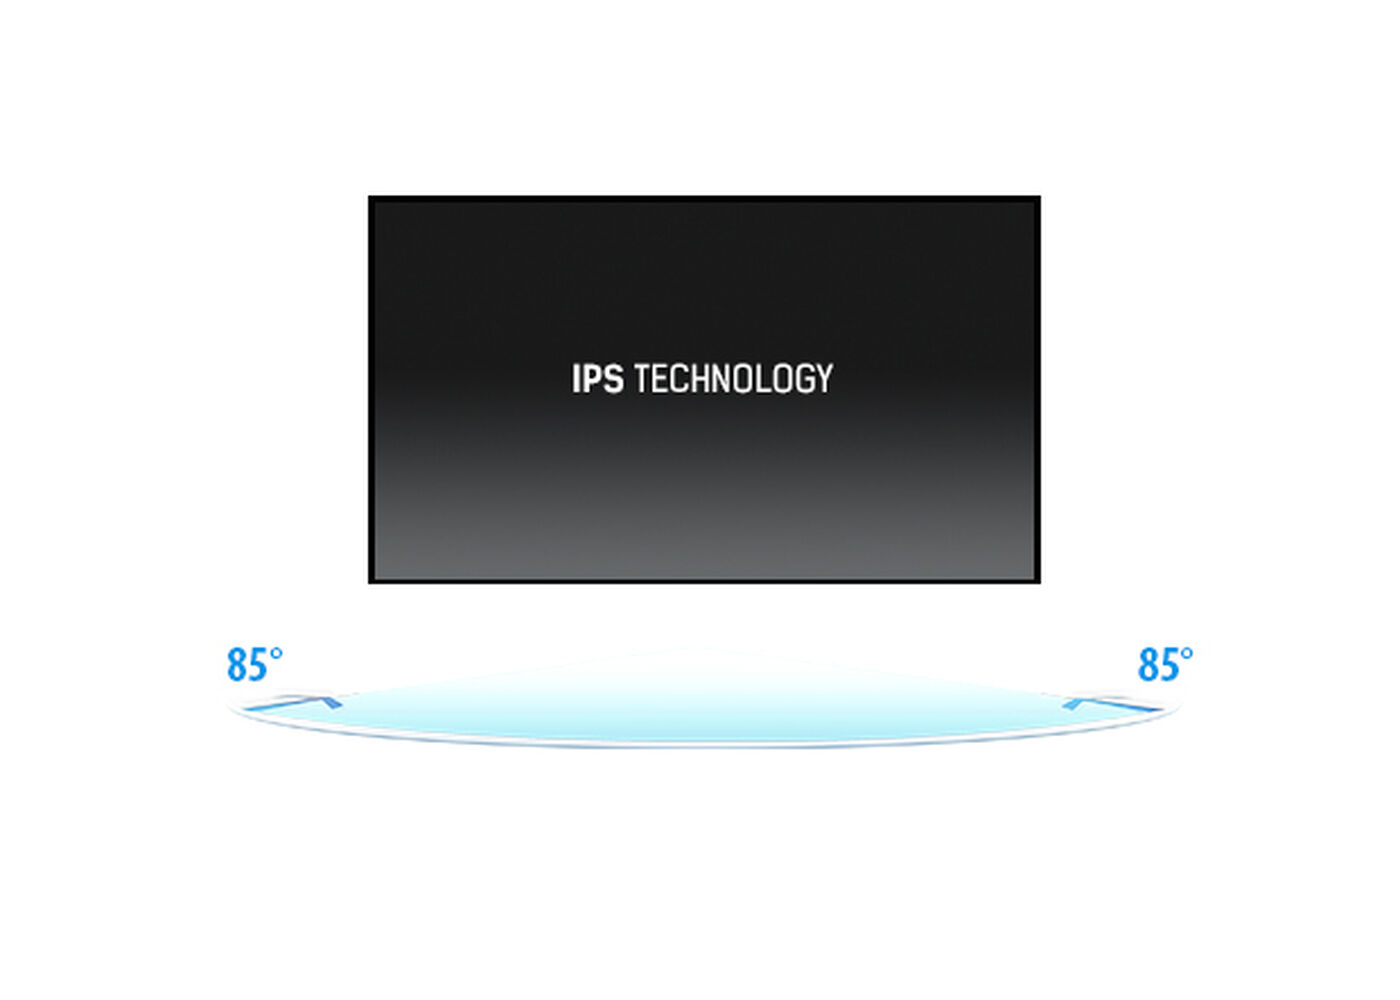 IPS Technology